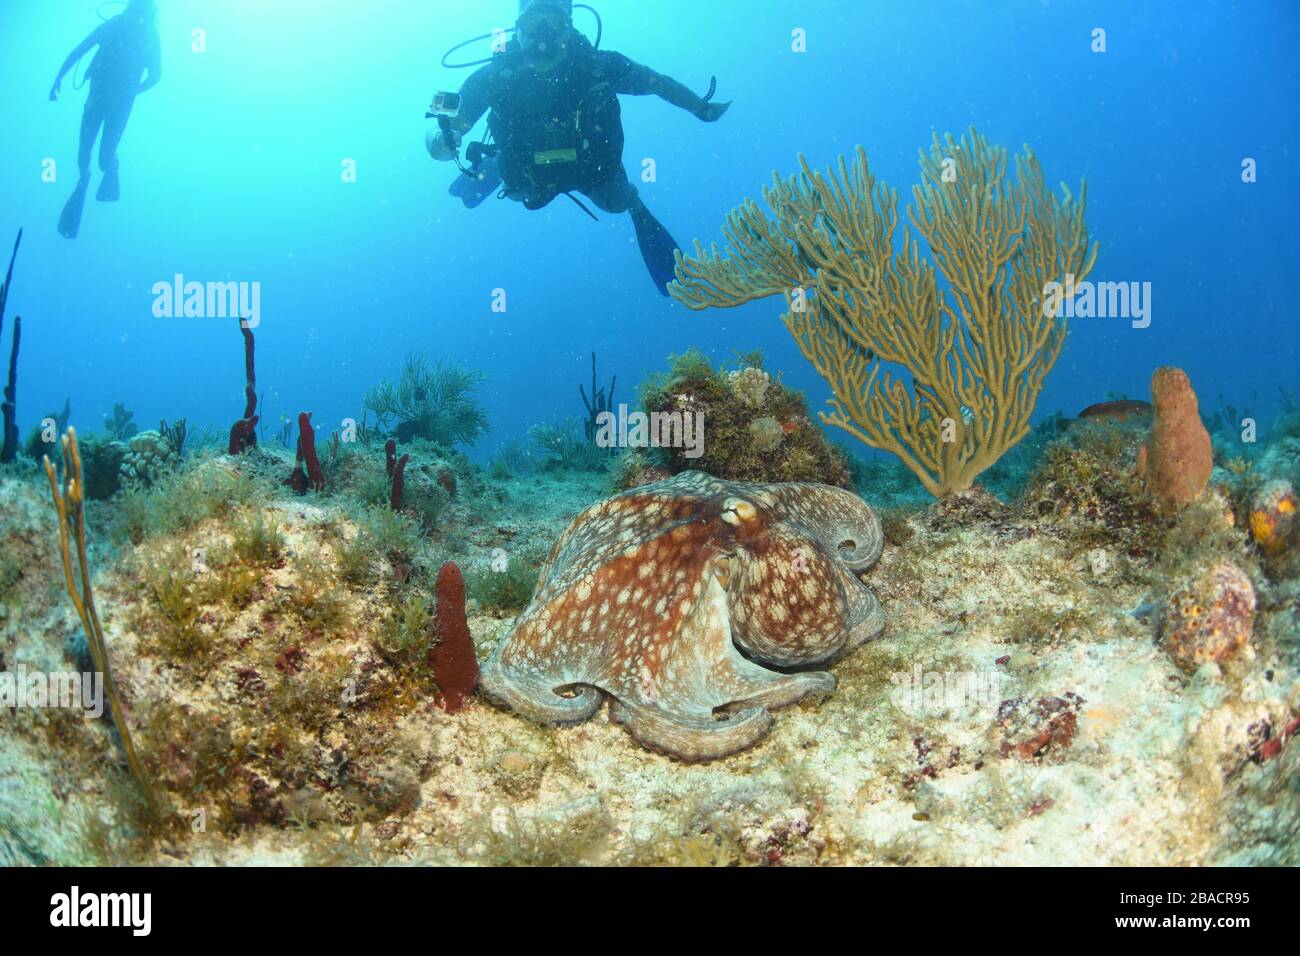 Octopus comune a piedi e cercando di nascondersi in pianura vista sulla cima della barriera corallina a St. Maarten, sito di immersione barriera corallina Foto Stock